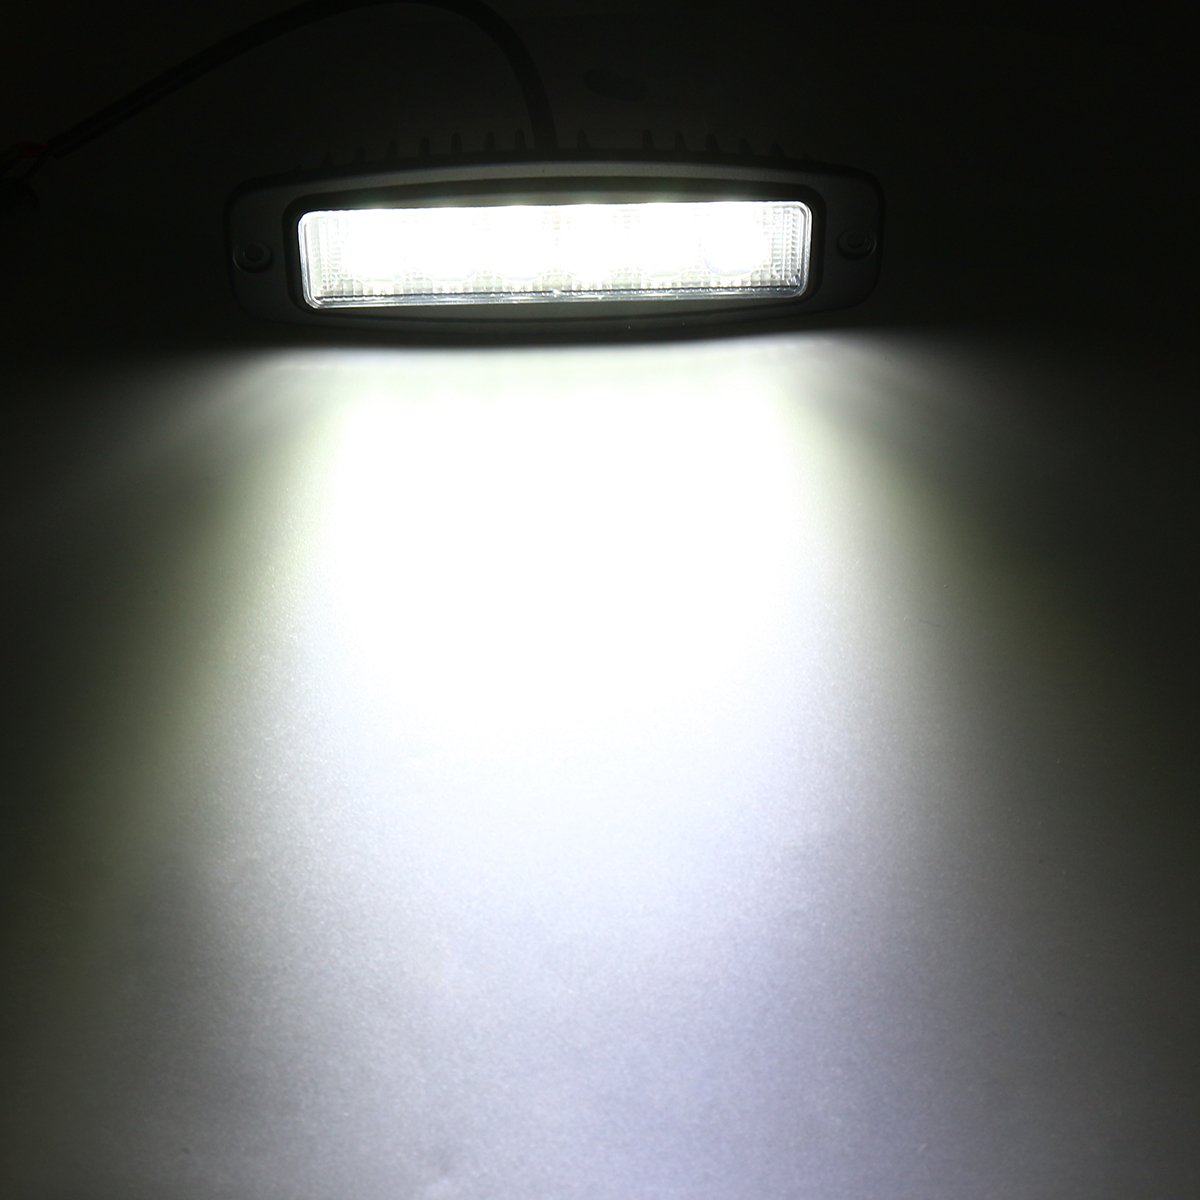 10-30V-6-LED-Car-Aluminum-Alloy-Flush-Mount-Flood-Work-Light-Bar-Driving-Reverse-Lamp-1372001